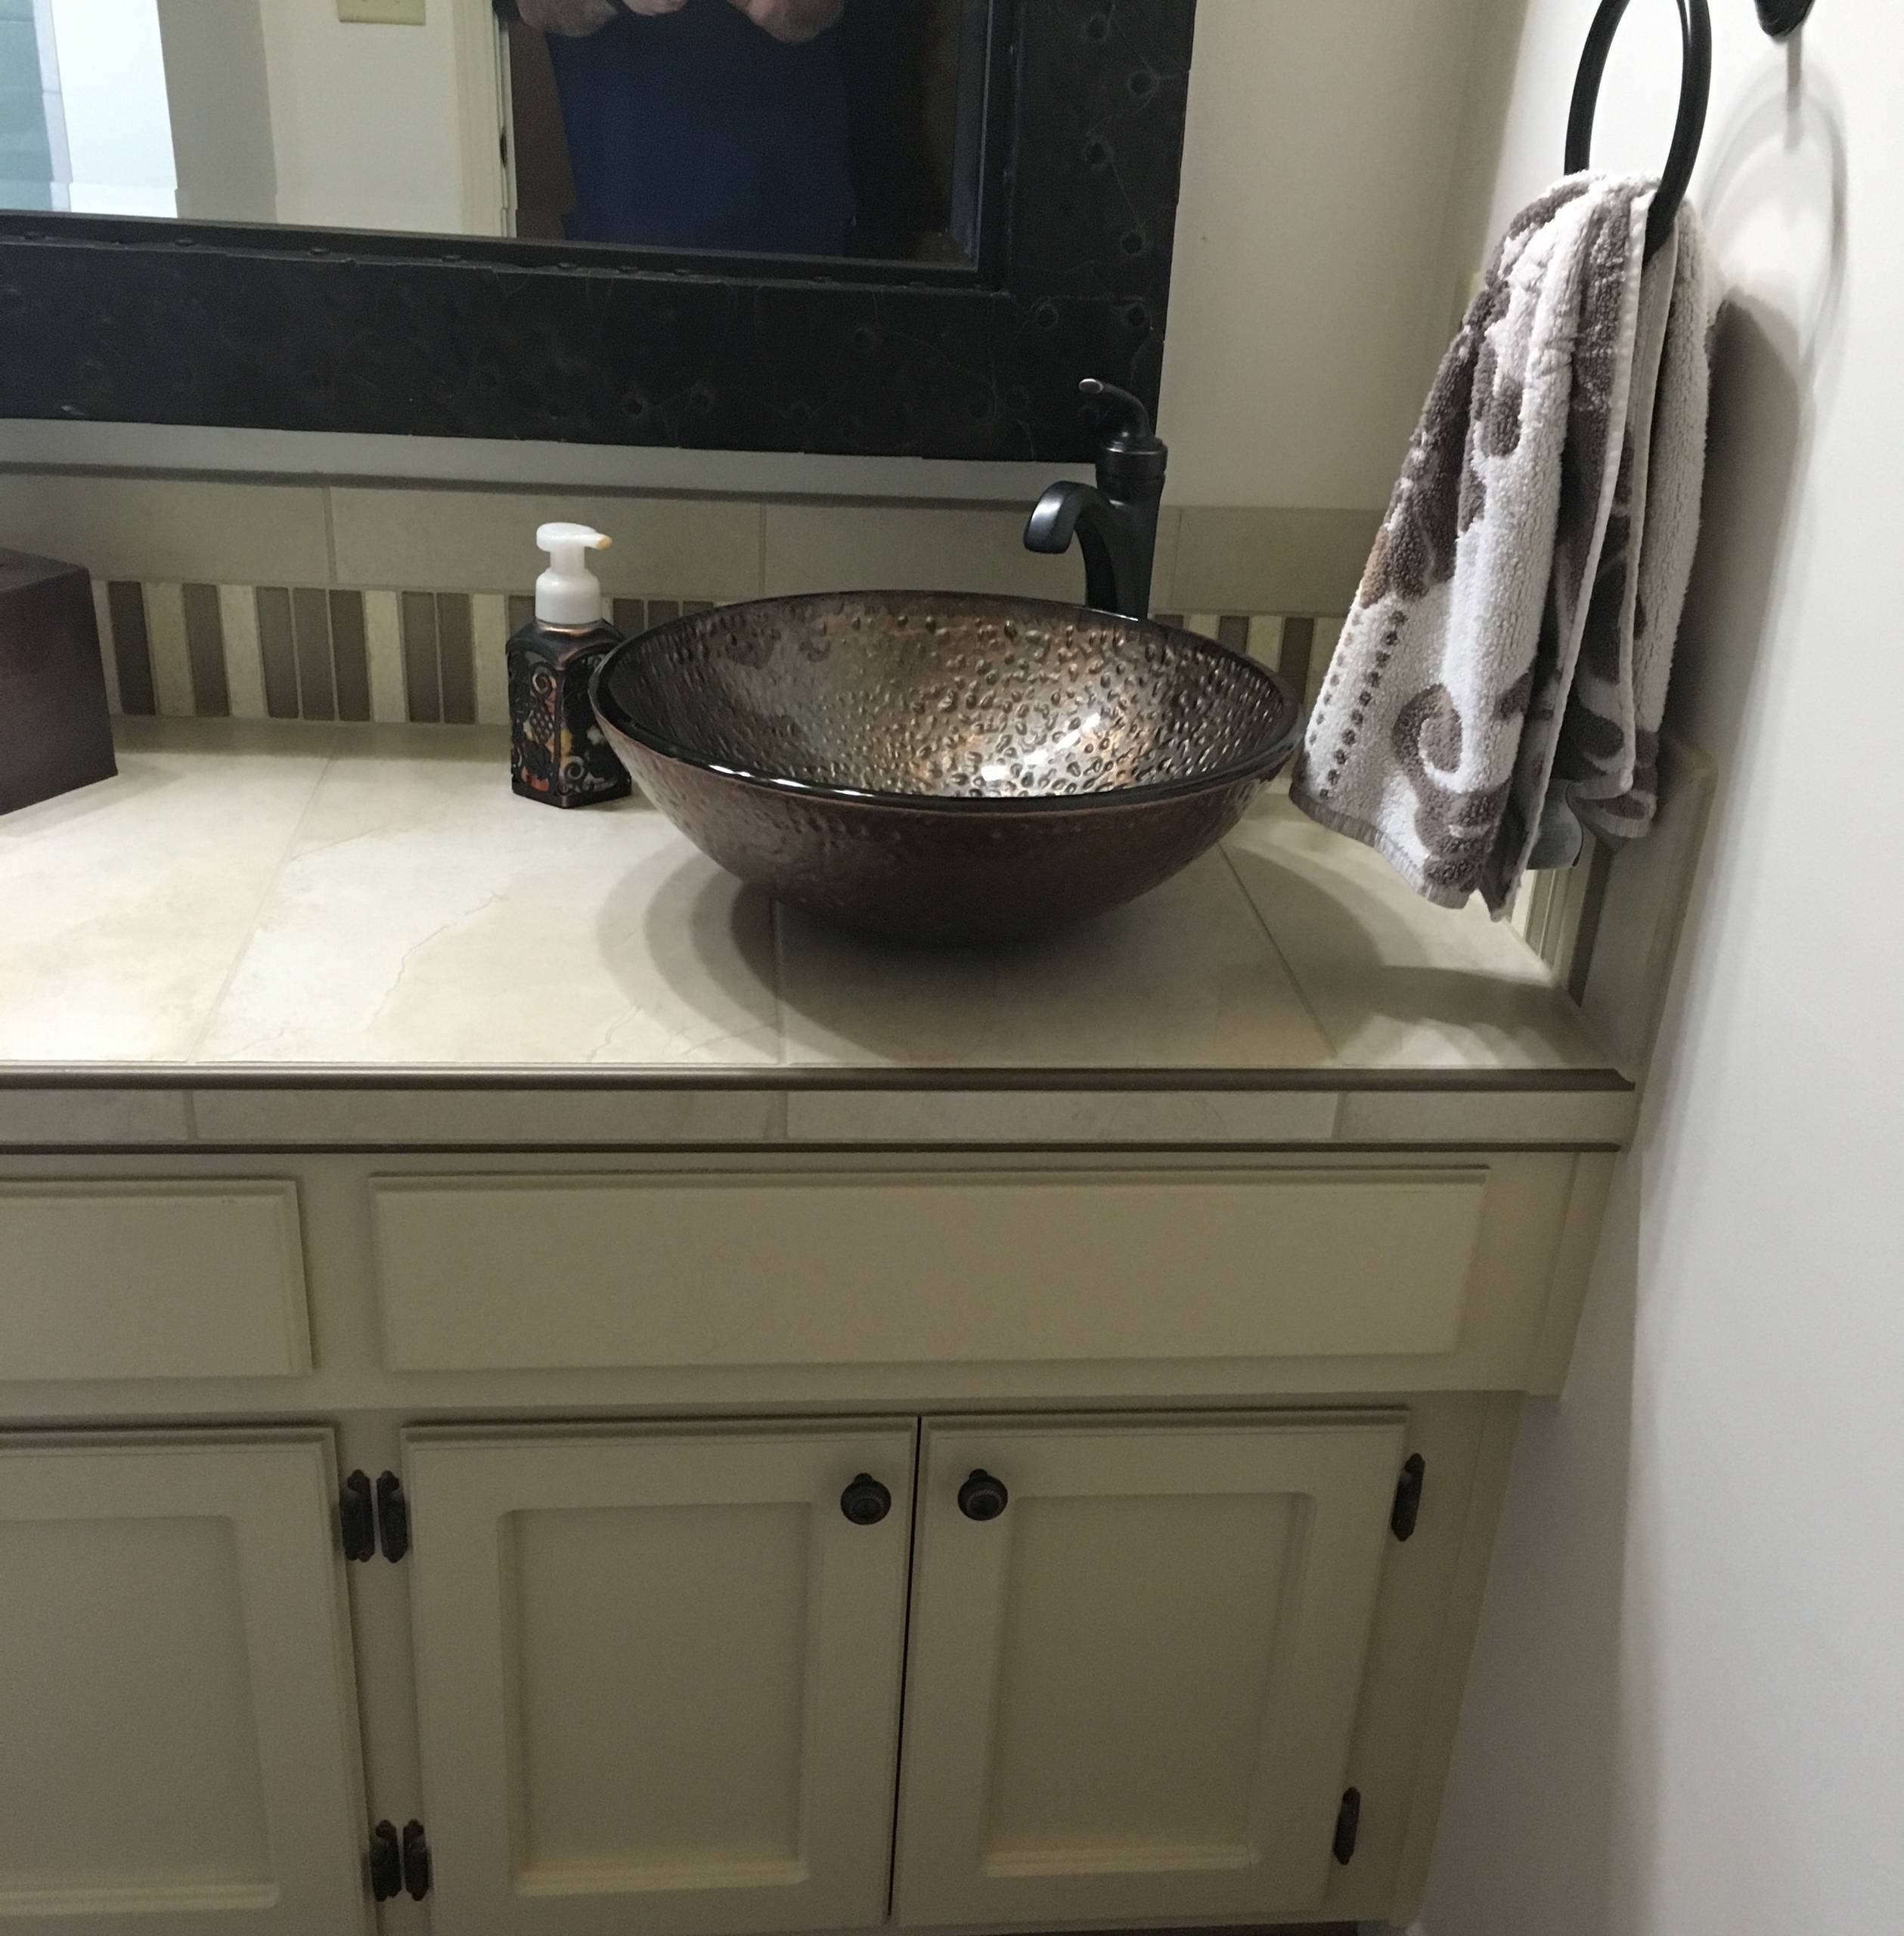 Vanity/Bathroom Remodel